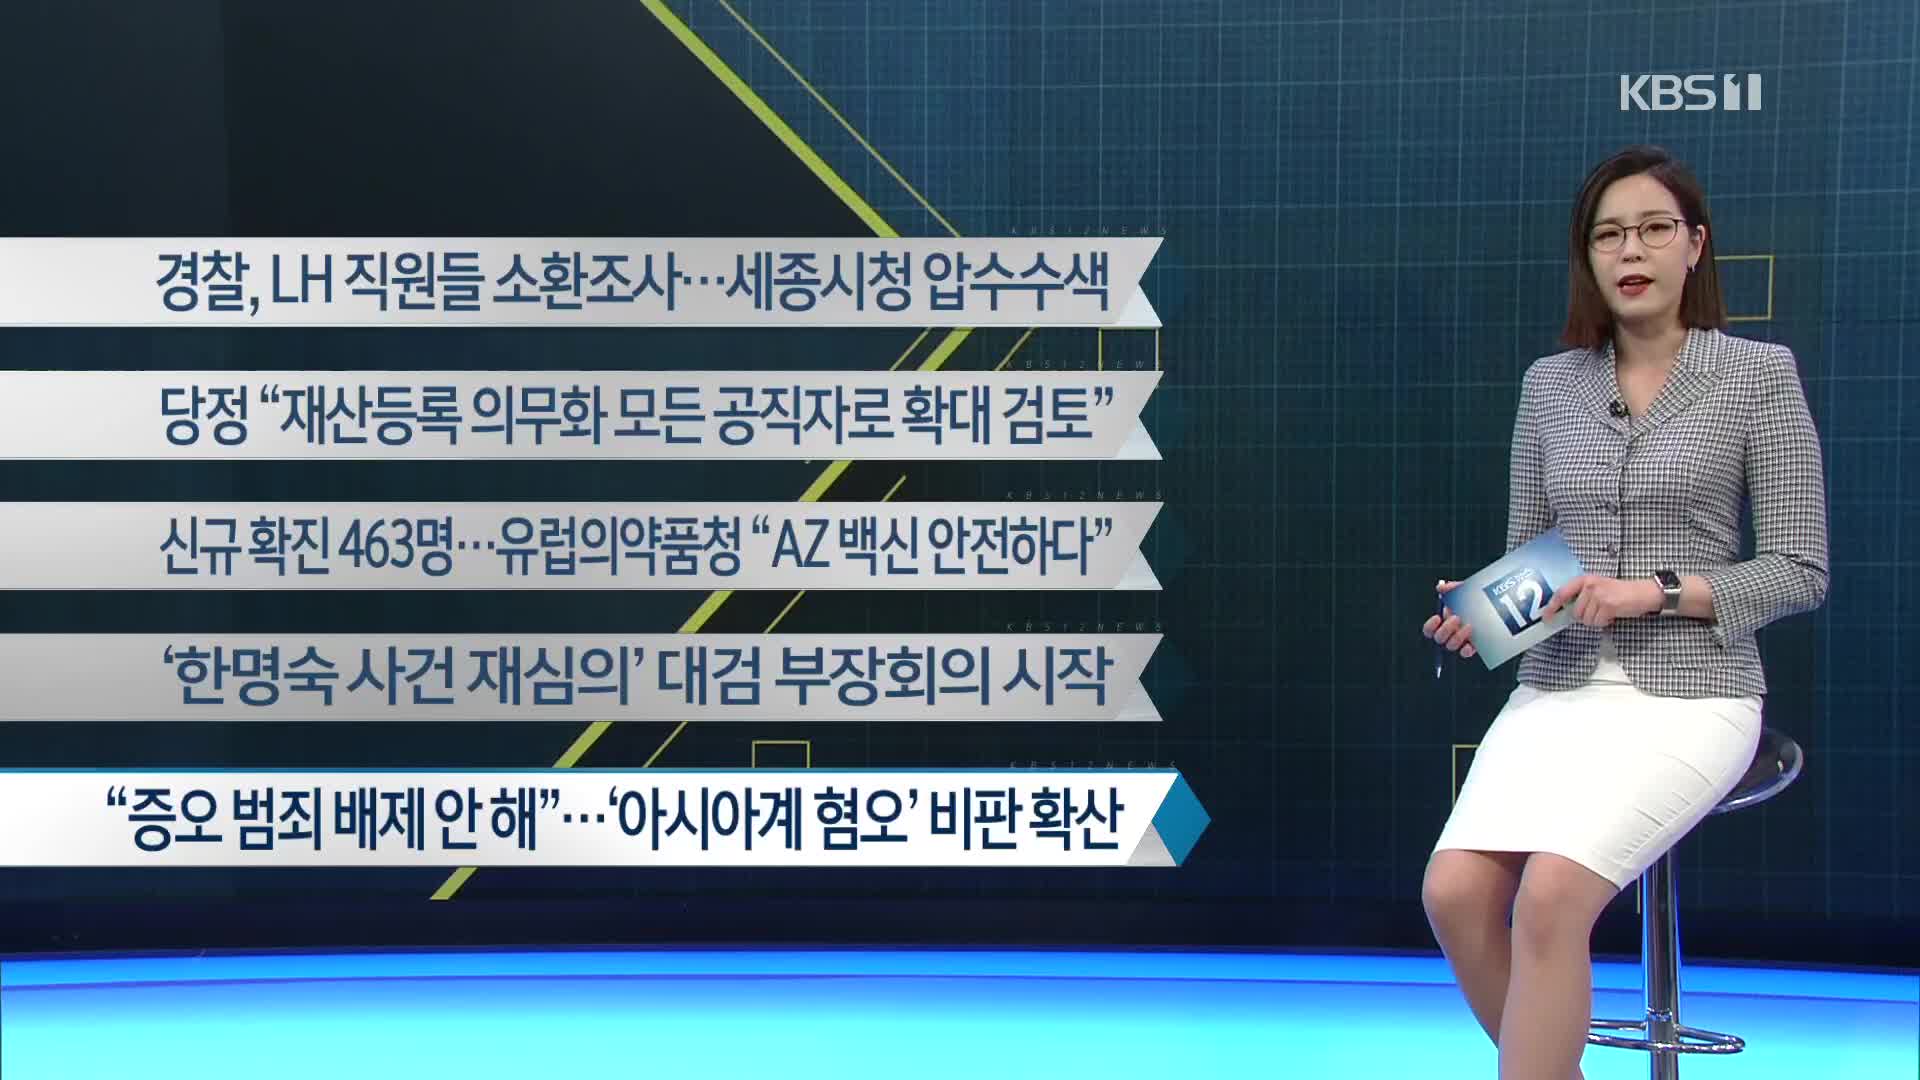 [이 시각 주요뉴스] 경찰, LH 직원들 소환 조사…세종시청 압수수색 외